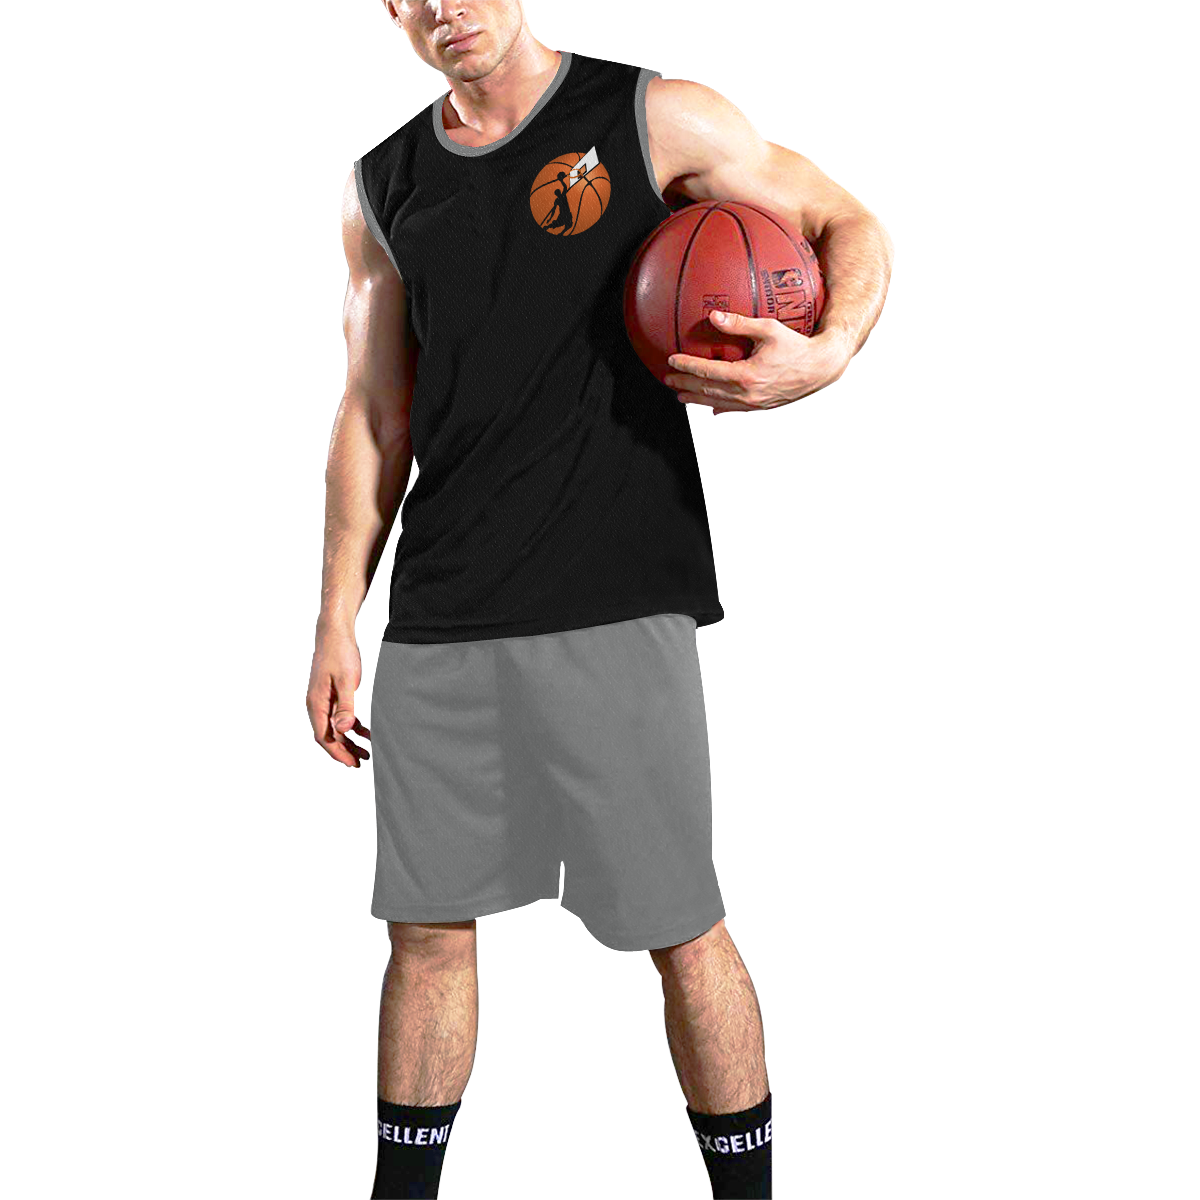 Slam Dunk Basketball Player Black and Gray All Over Print Basketball Uniform